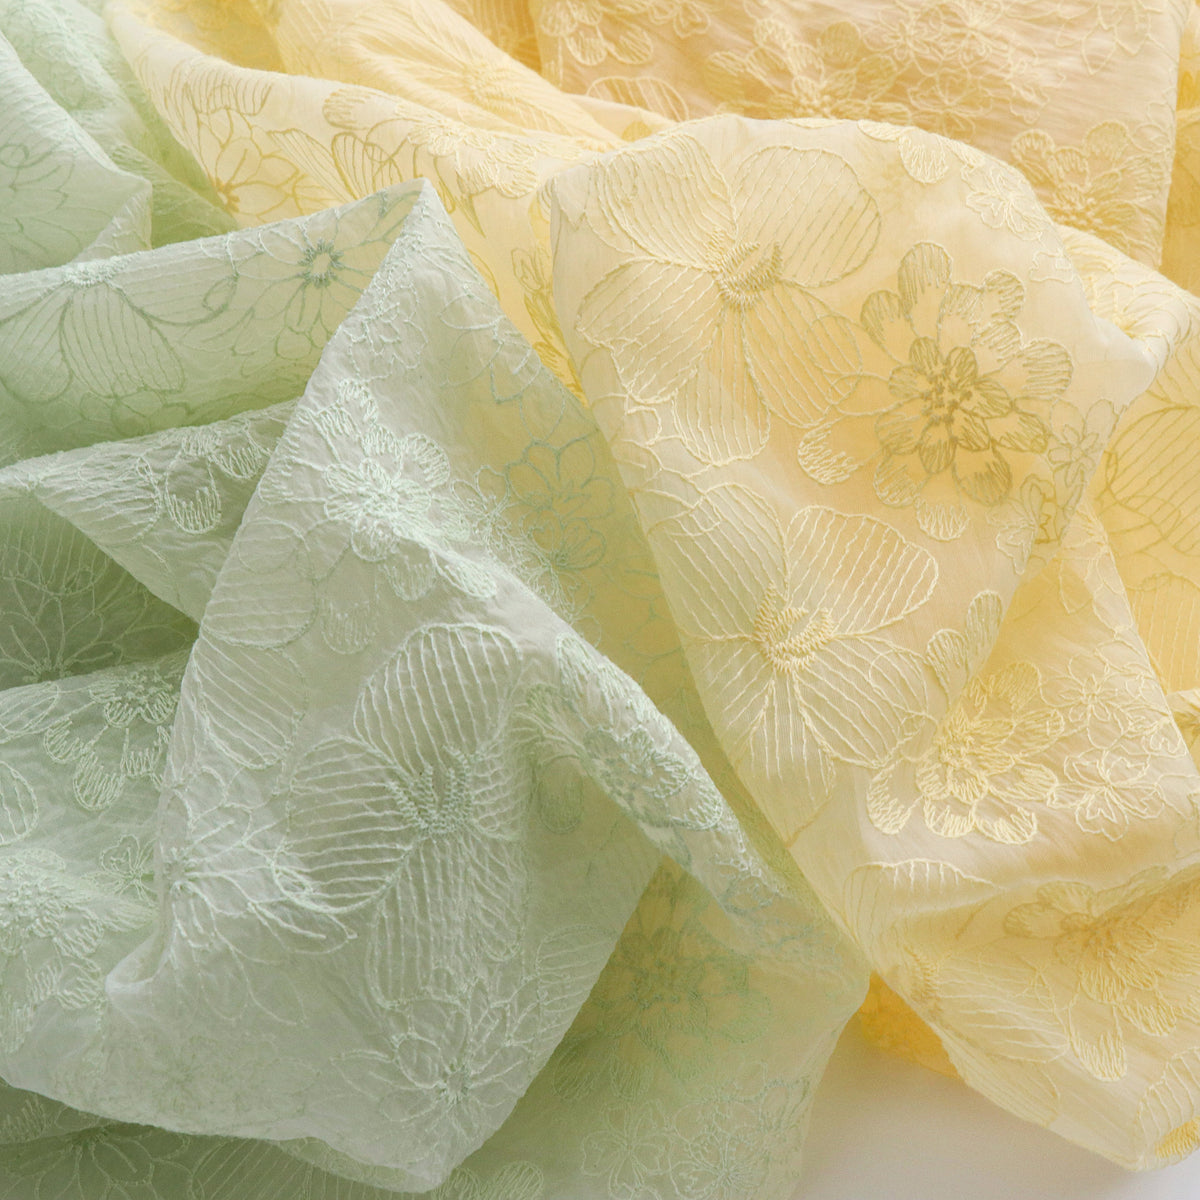 140cm Width x 95cm Length Premium Daisy Flower Embroidery Cotton Linen –  iriz Lace